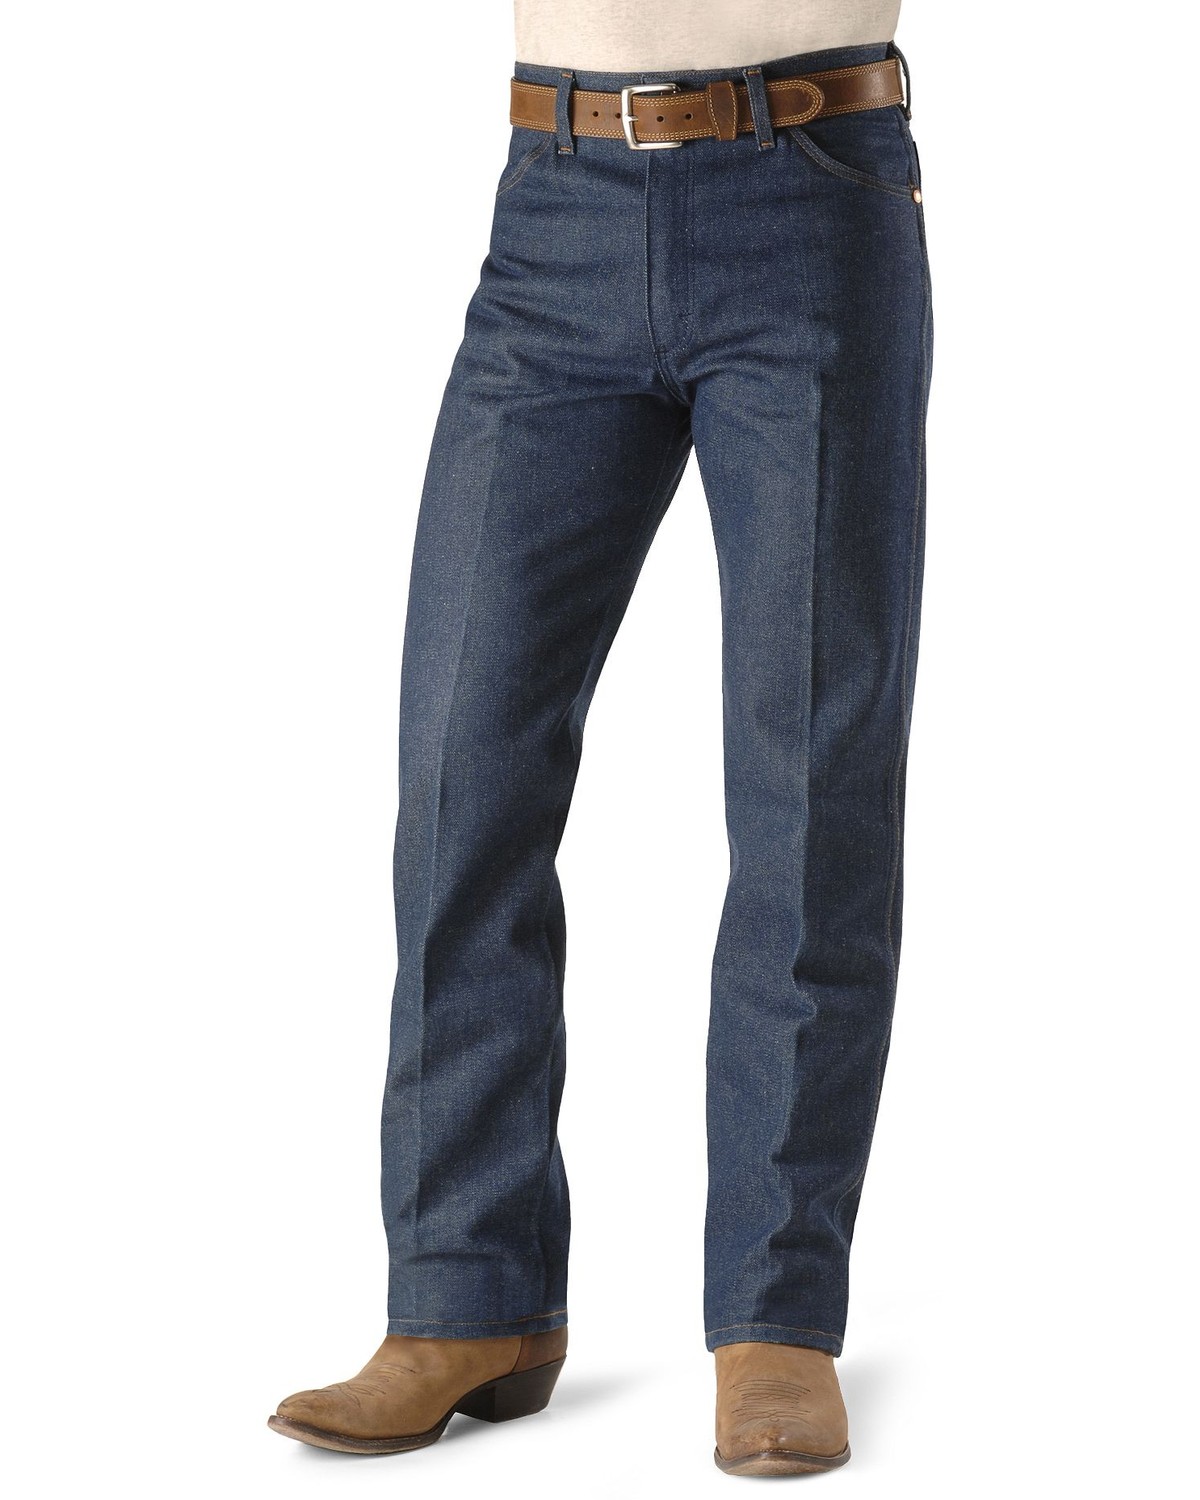 original wrangler jeans